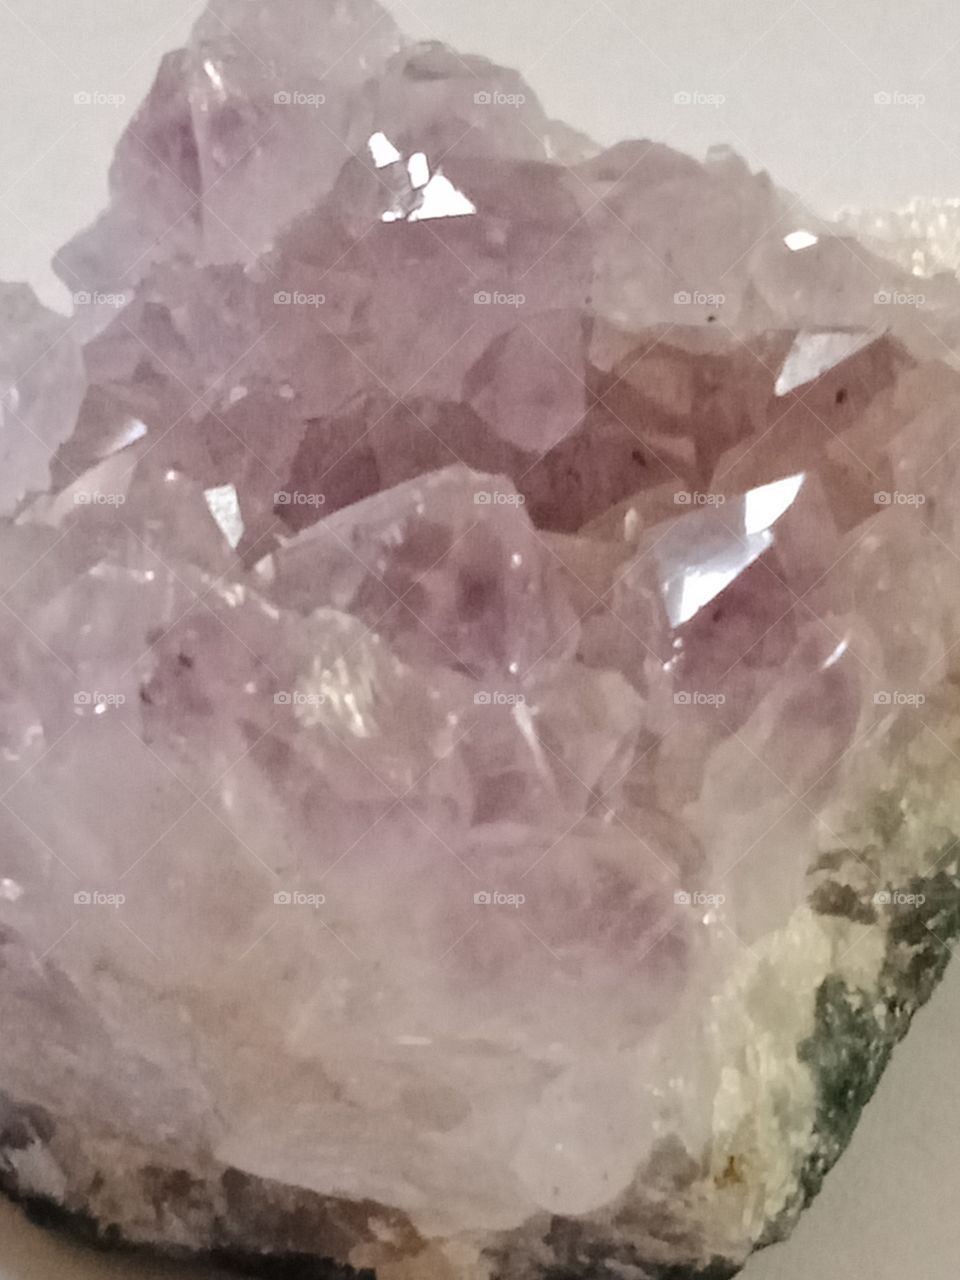 an amethyst crystal